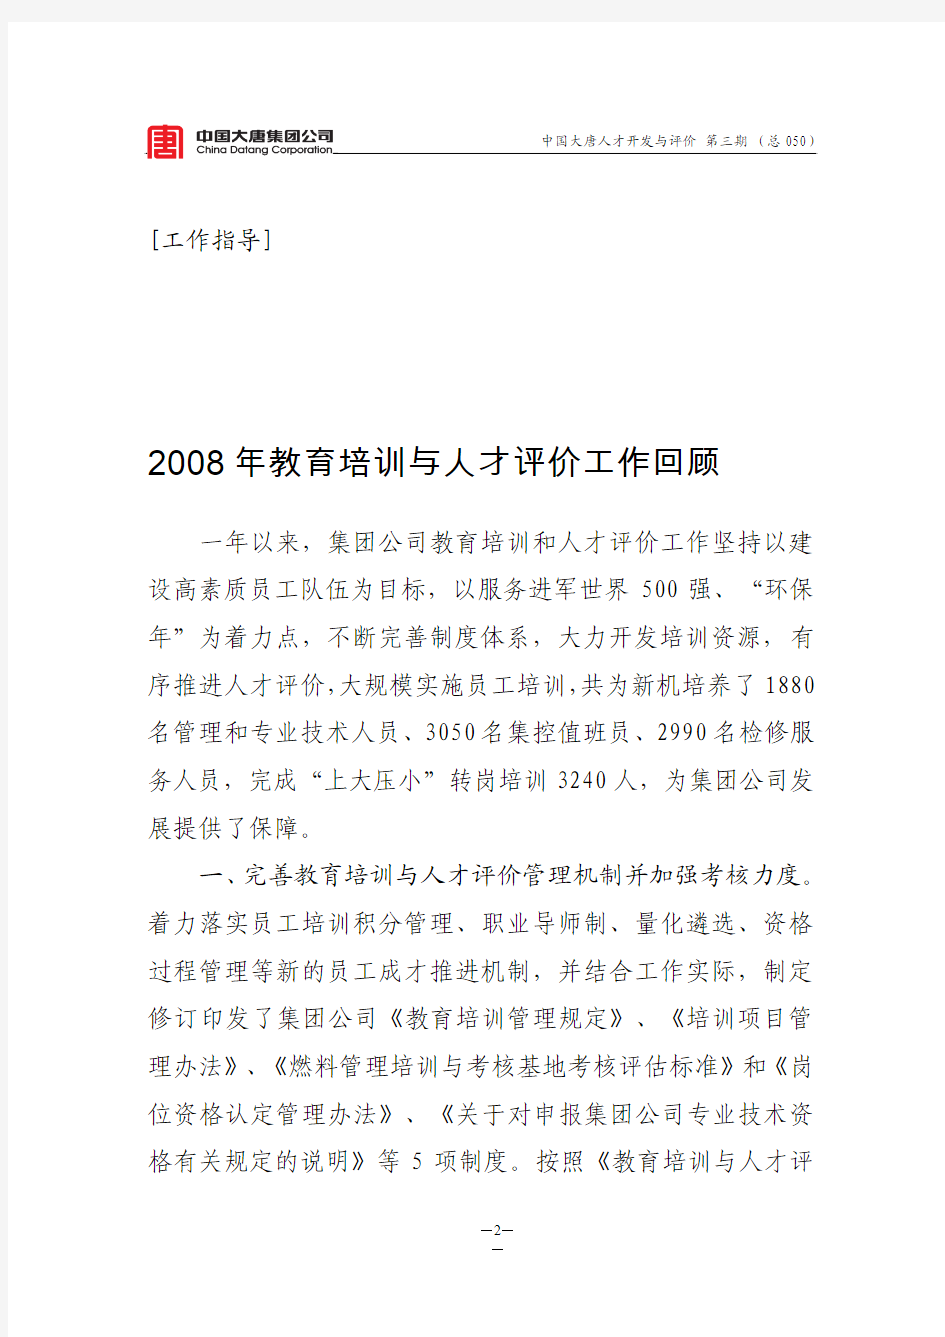 《中国大唐人才开发与评价》(2009)第三期(总050)090103)